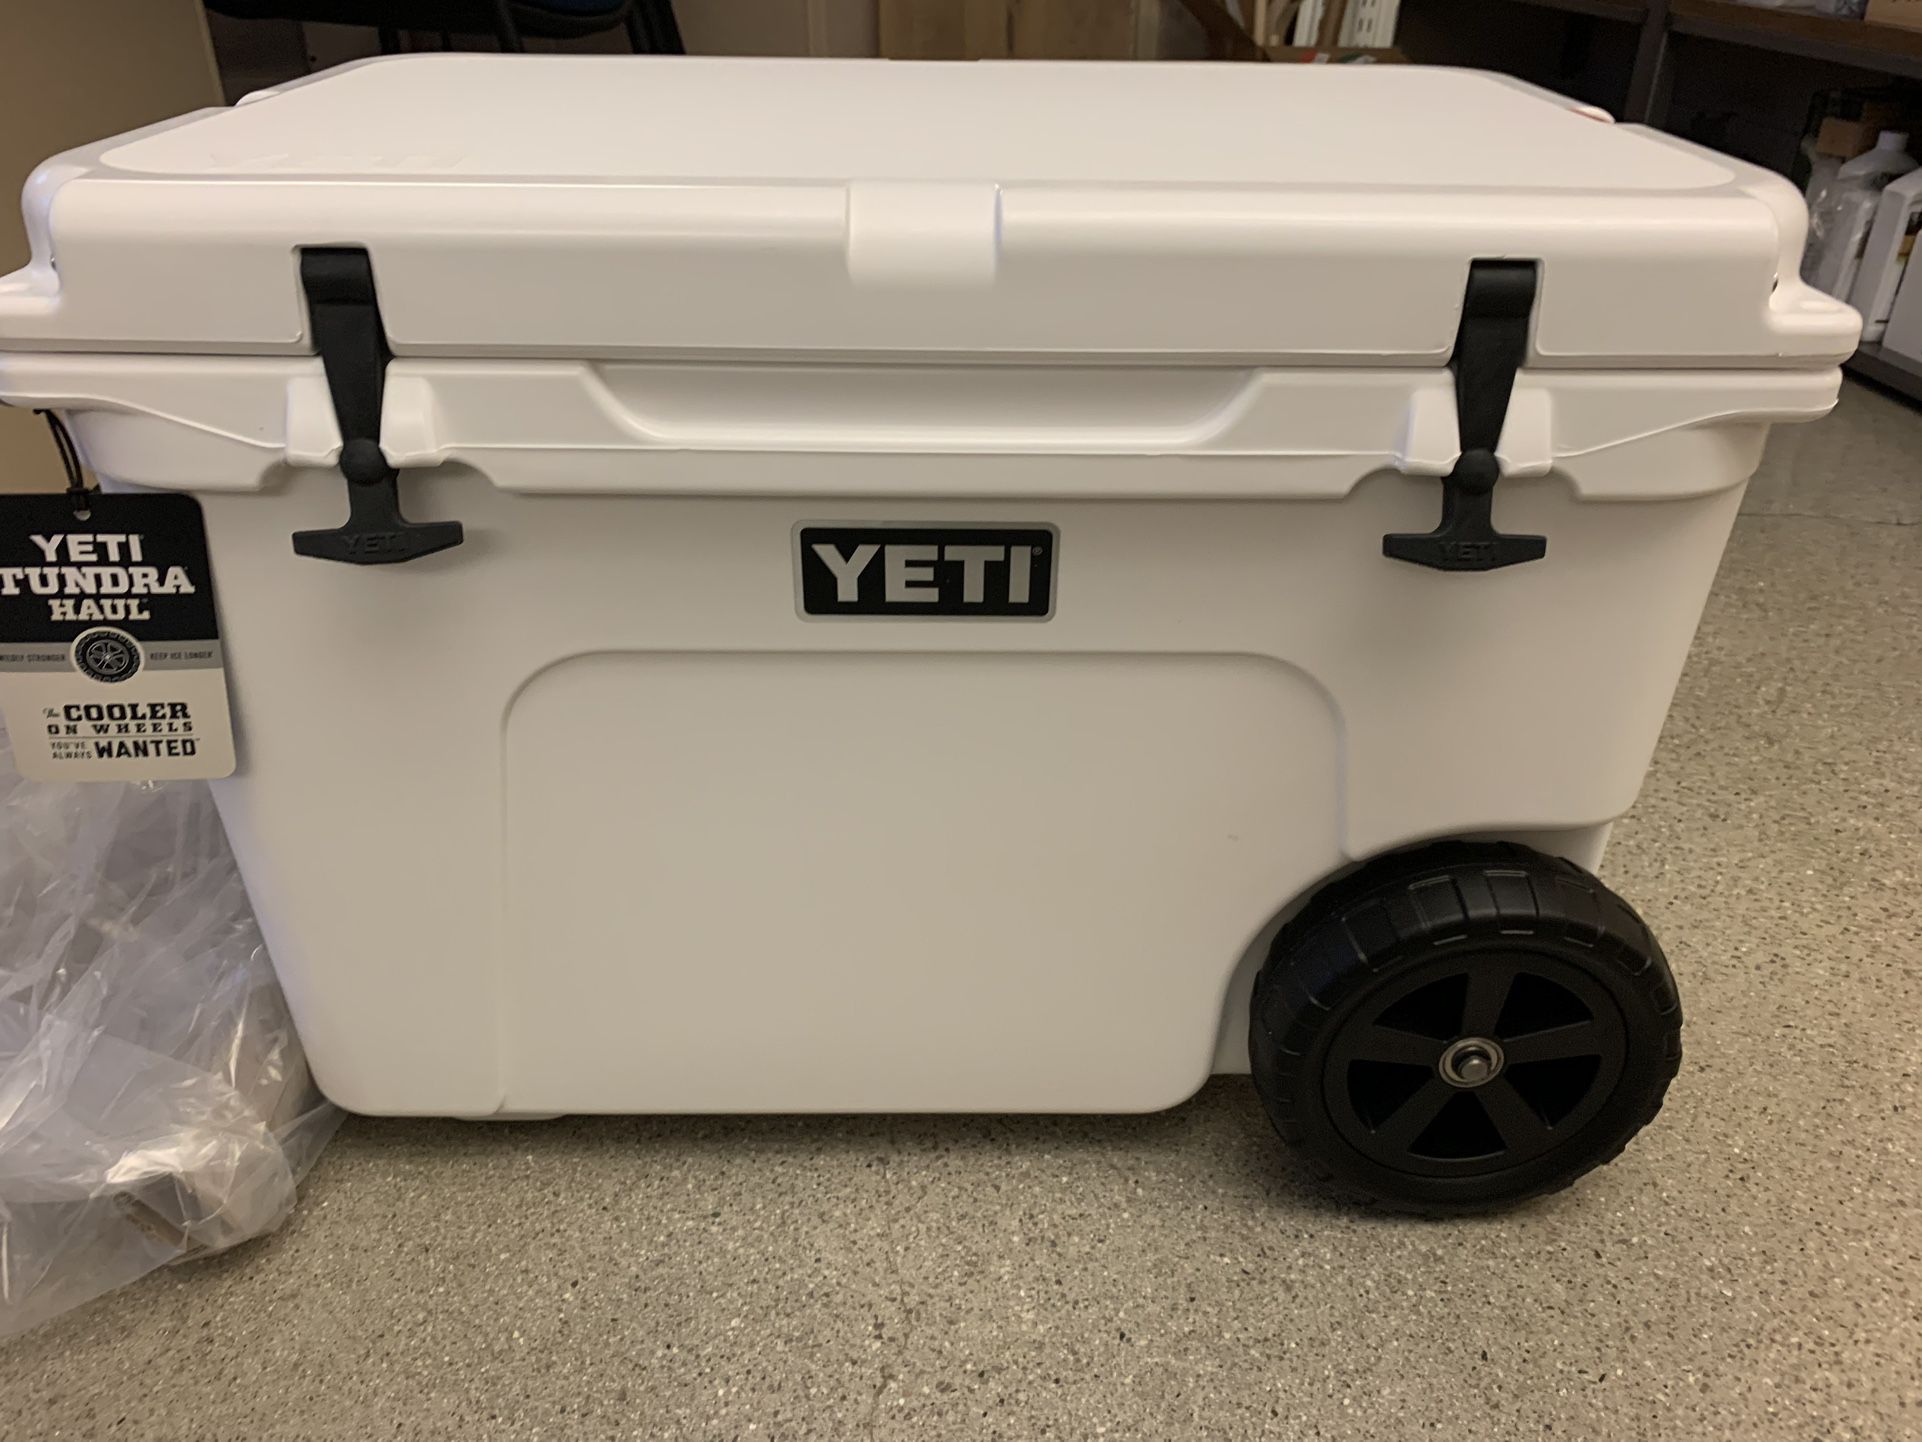 YETI Tundra Haul Cooler - White - Brand New in Original Box